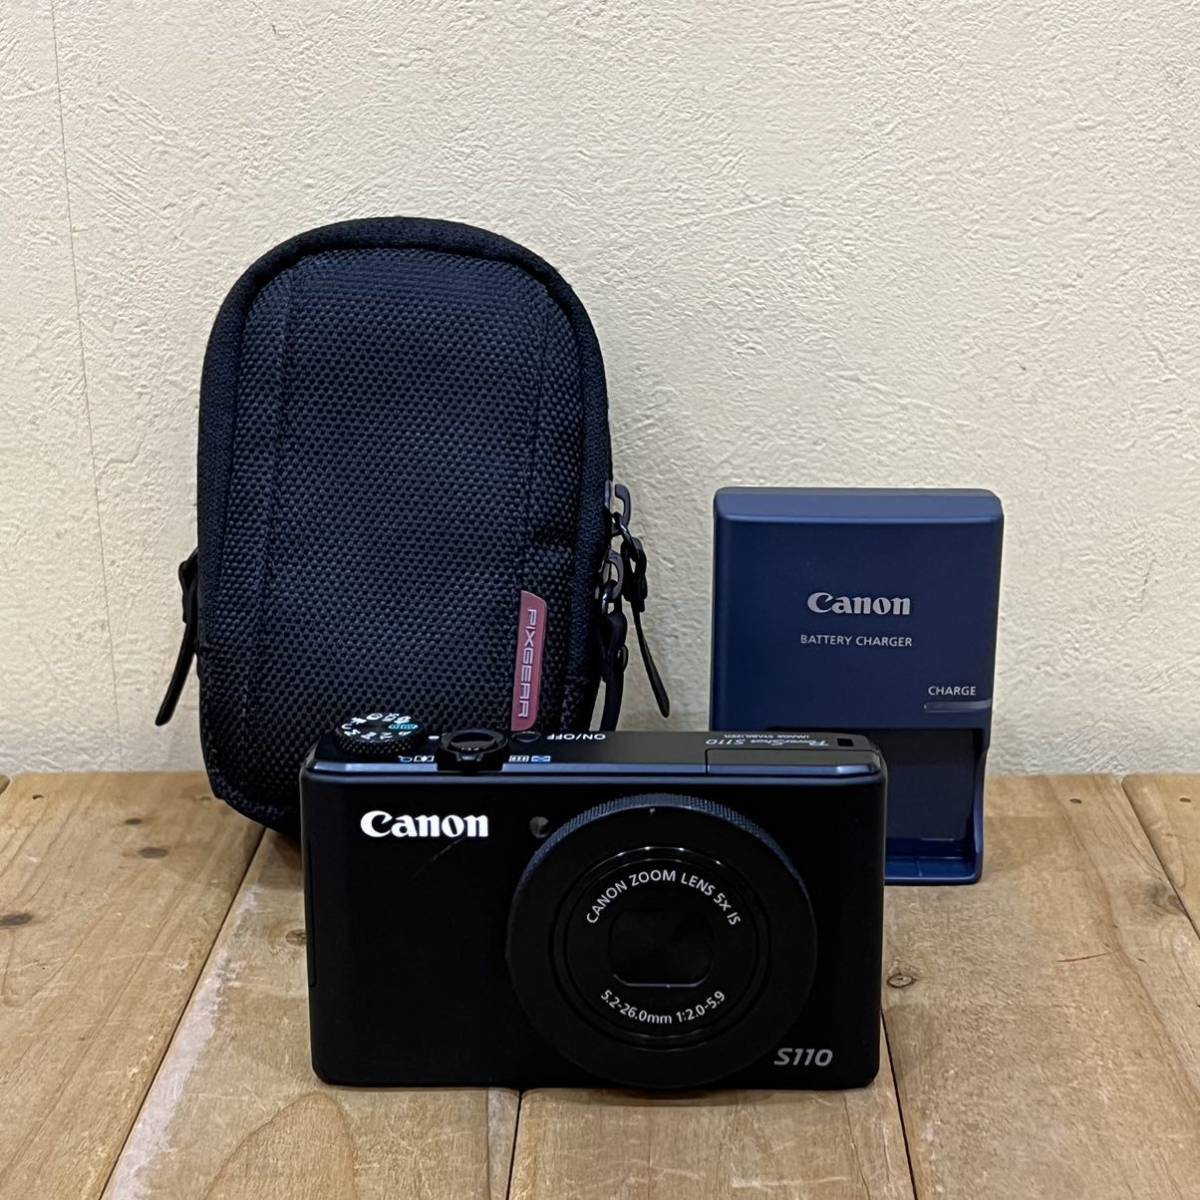 ◆ Canon キャノン パワーショット S110 可動品 ブラック バッテリーチャージャー ケース付き◆_画像2